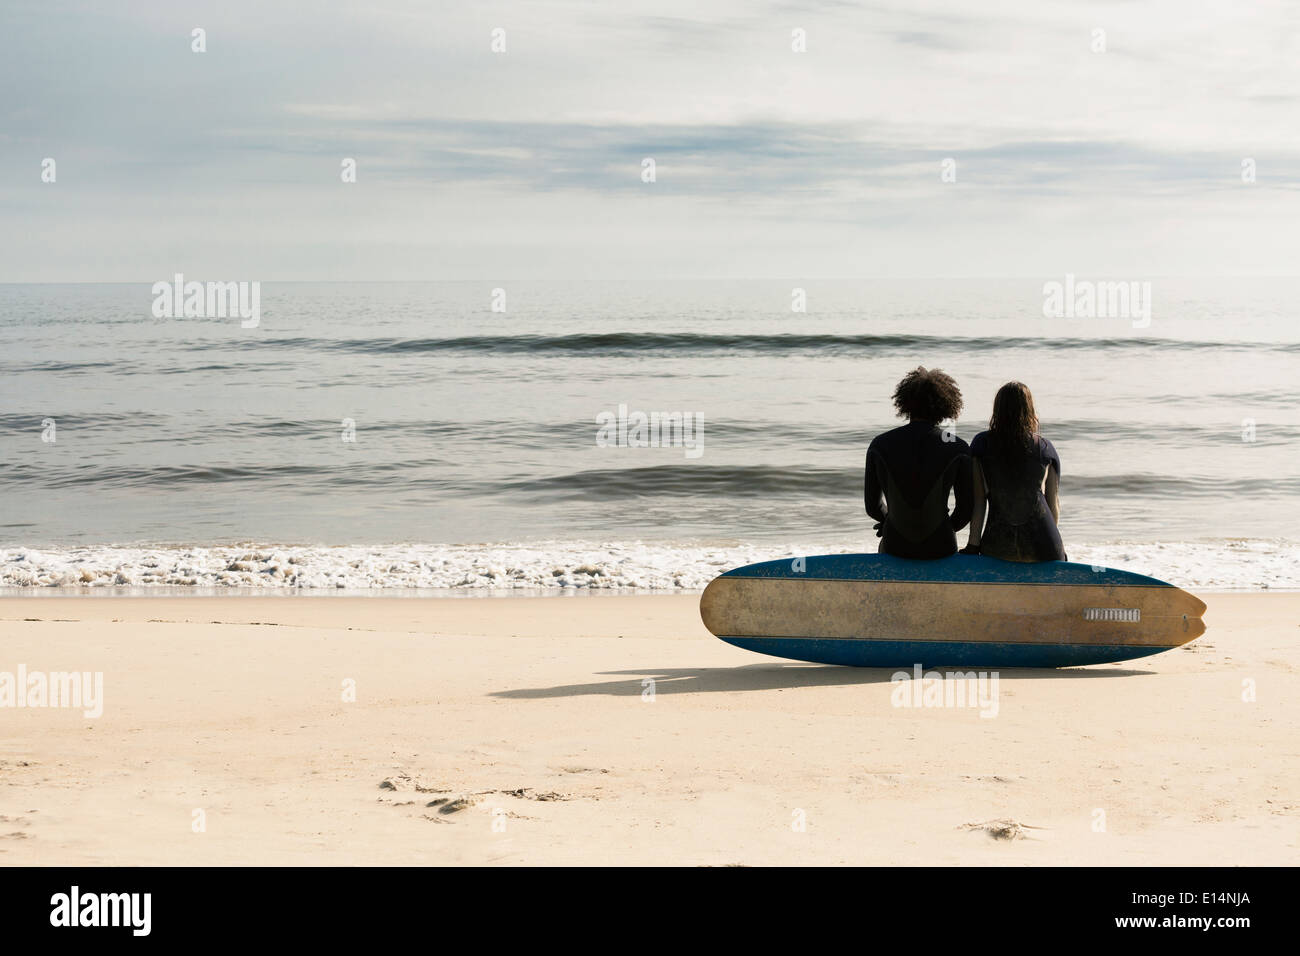 Les surfeurs assis sur board on beach Banque D'Images